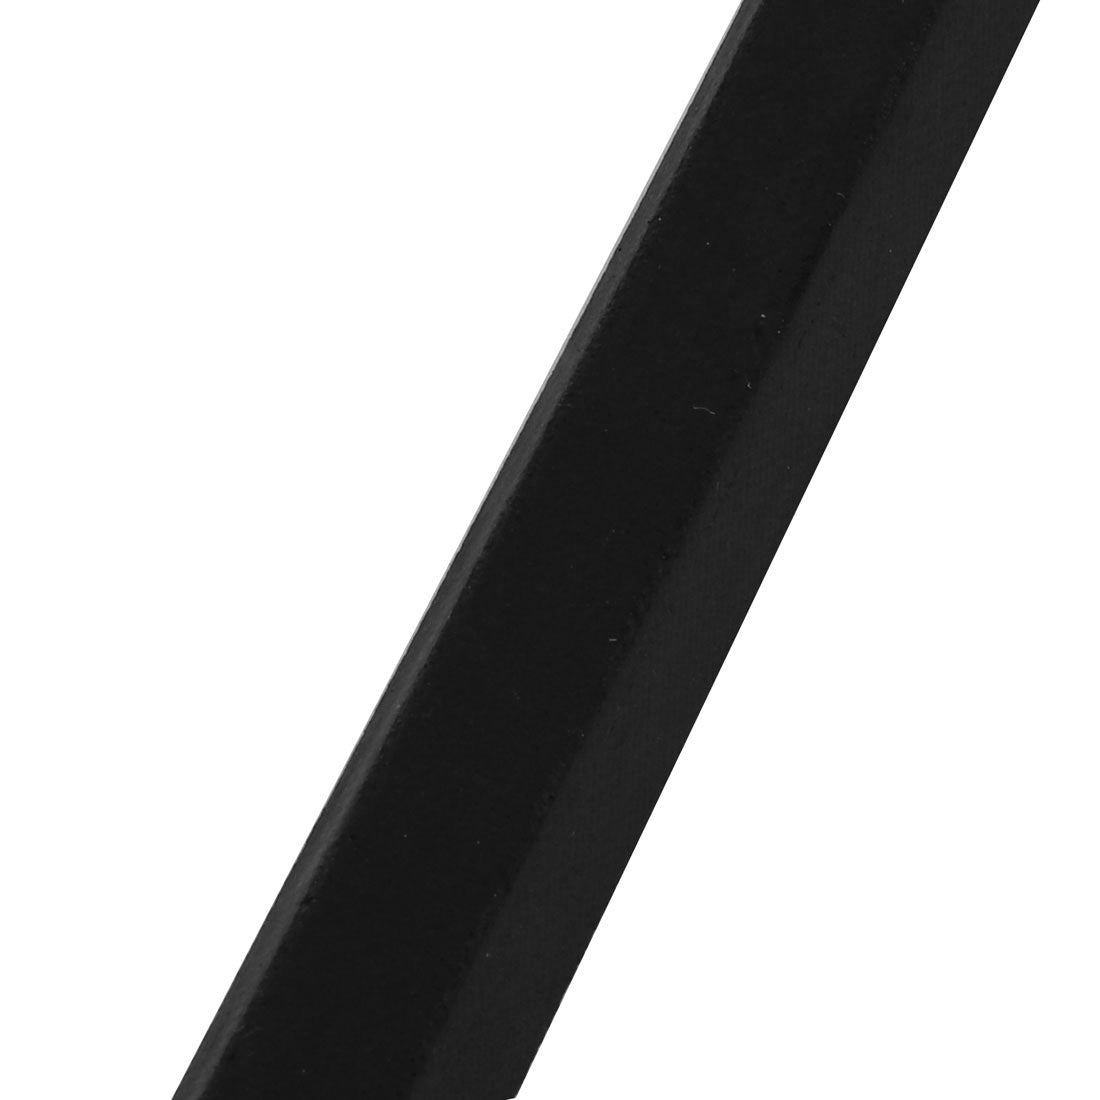 uxcell Uxcell B1067 17mm Wide 11mm Thick Rubber Transmission Drive Belt V-Belt Black